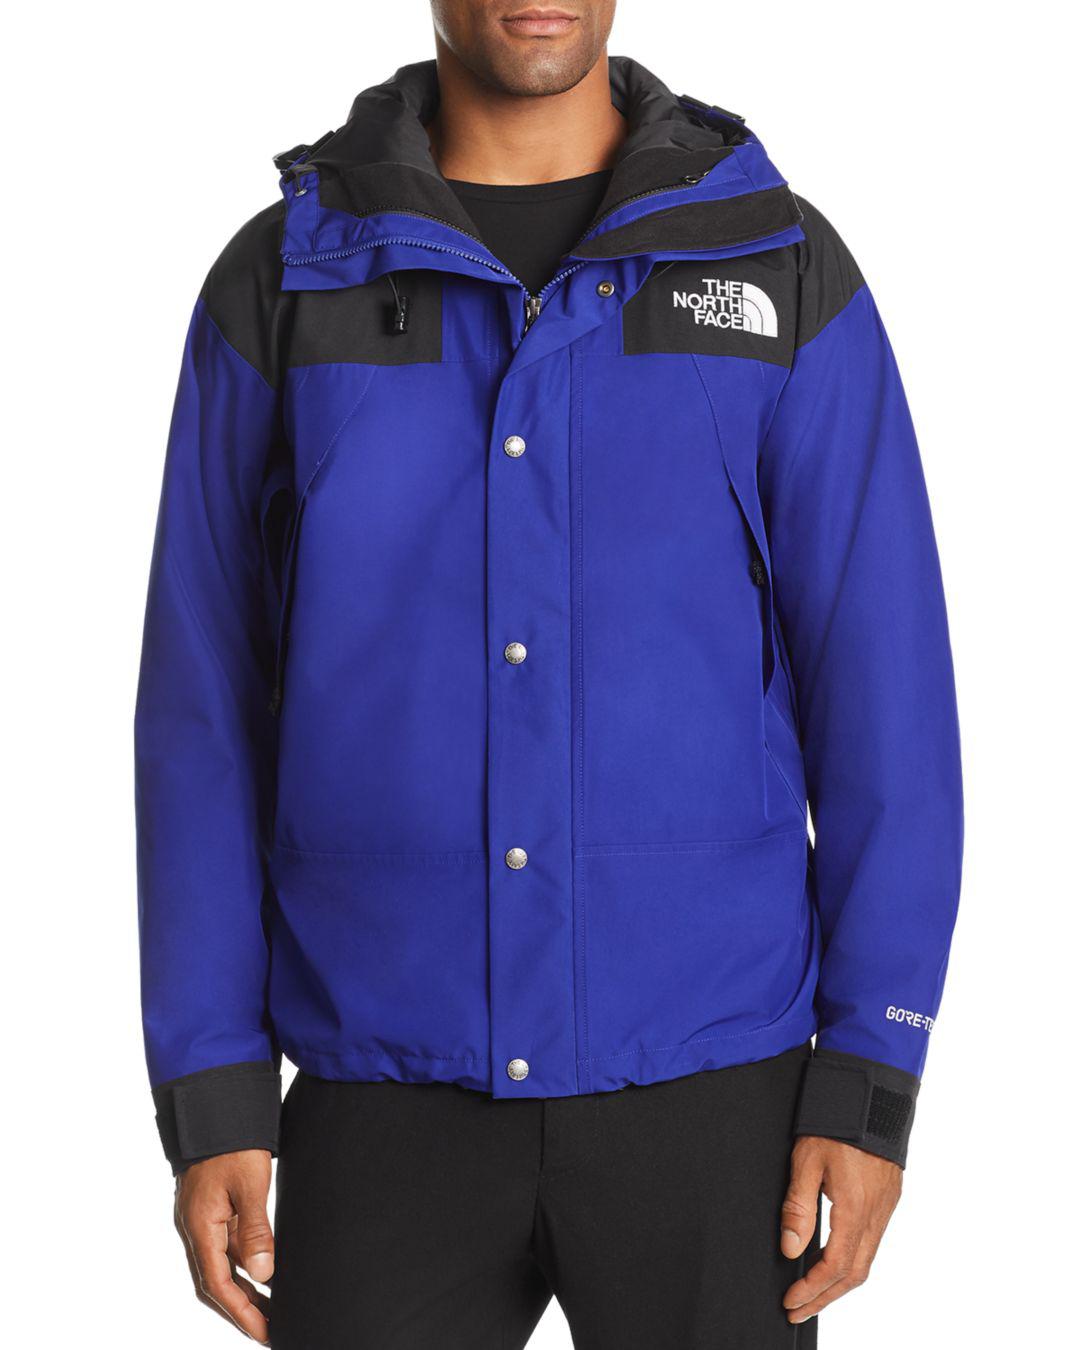 1990 mountain jacket gtx aztec blue